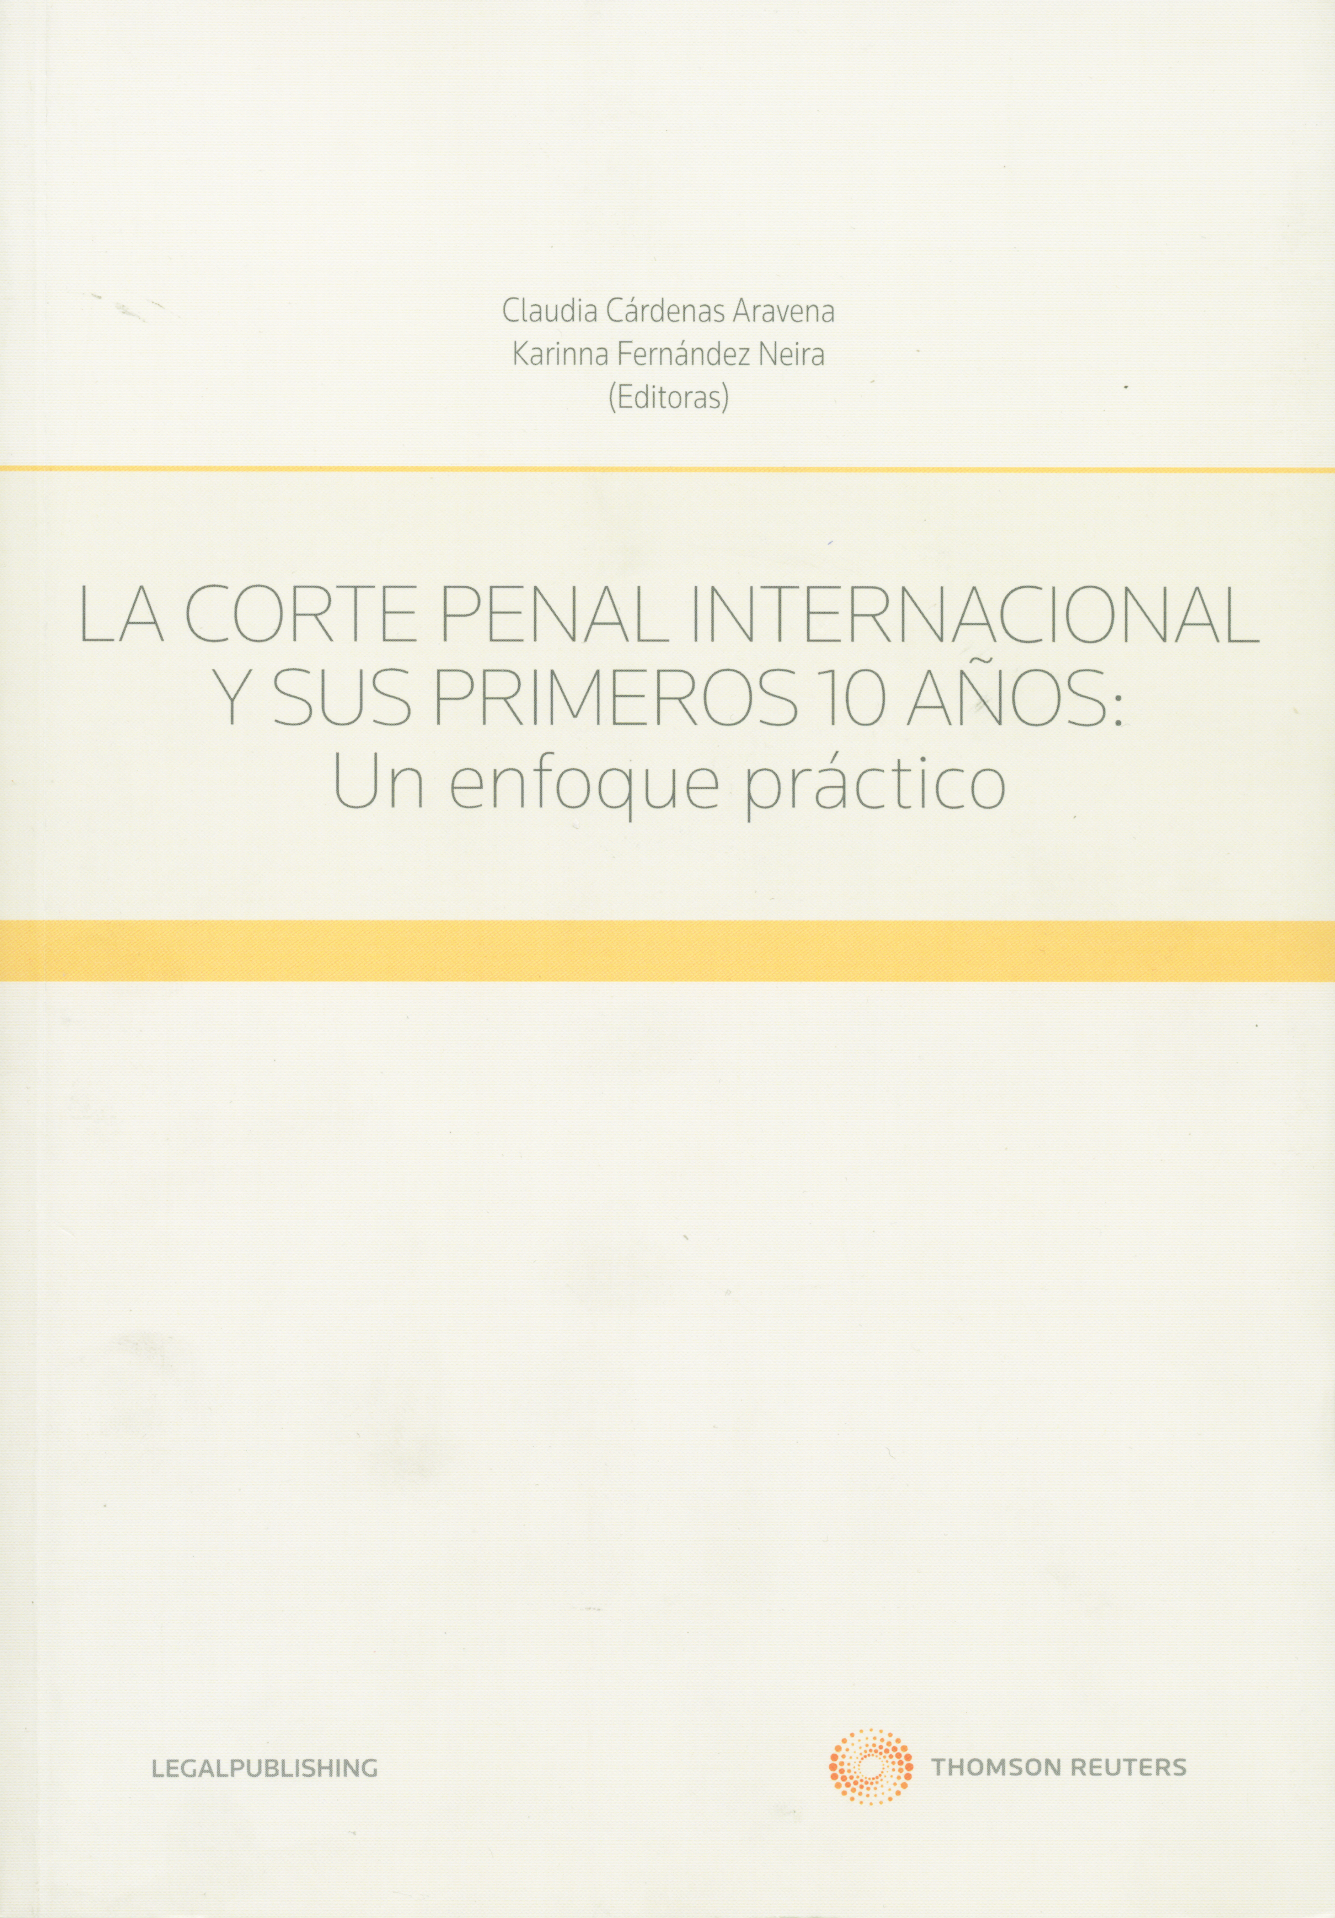 La corte penal internacional y sus primeros 10 años. Un enfoque práctico